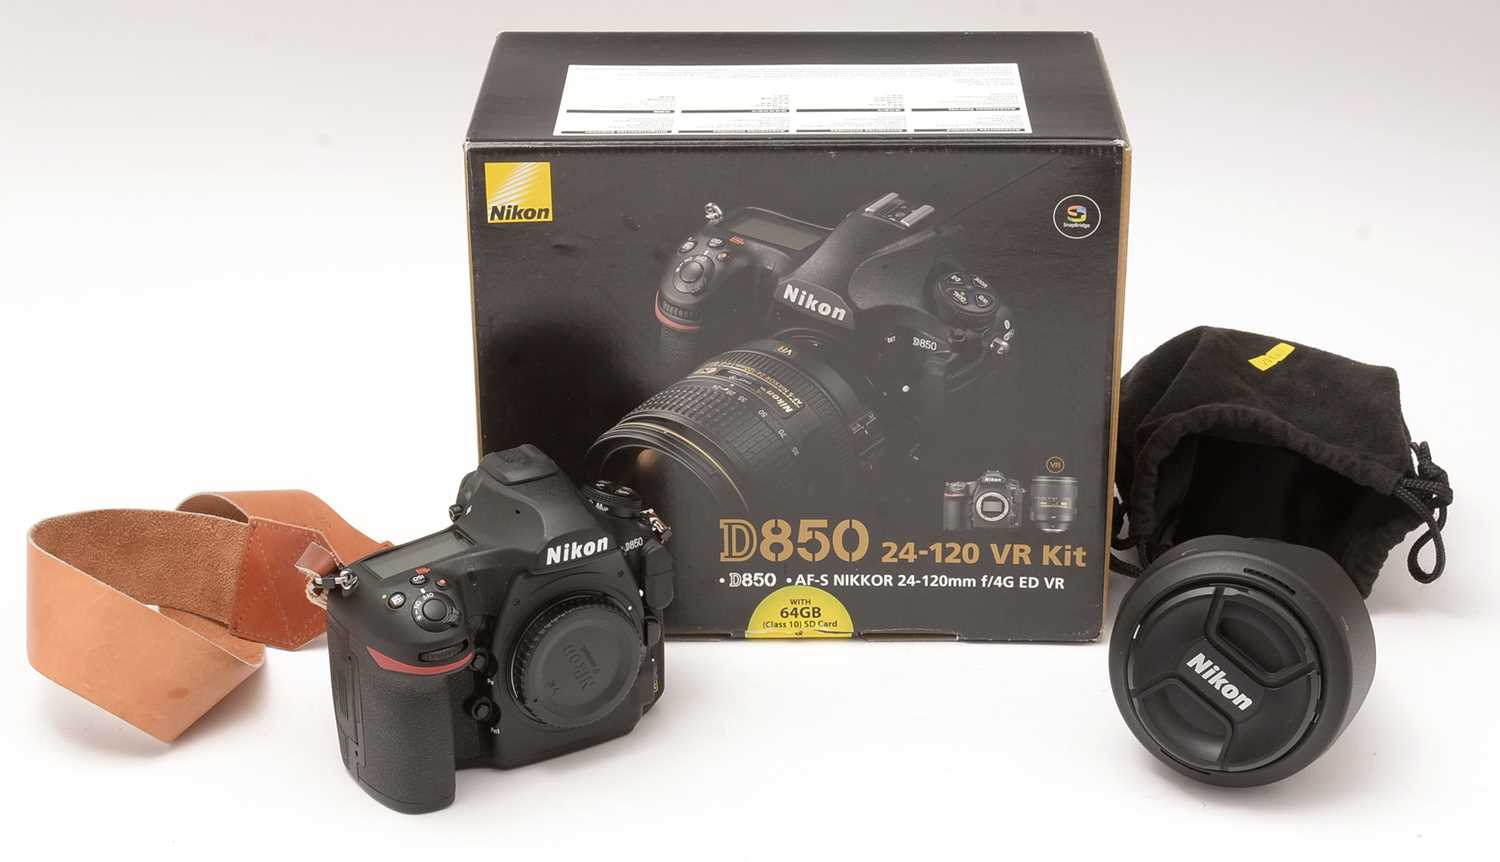 353 - A Nikon D850 camera kit.